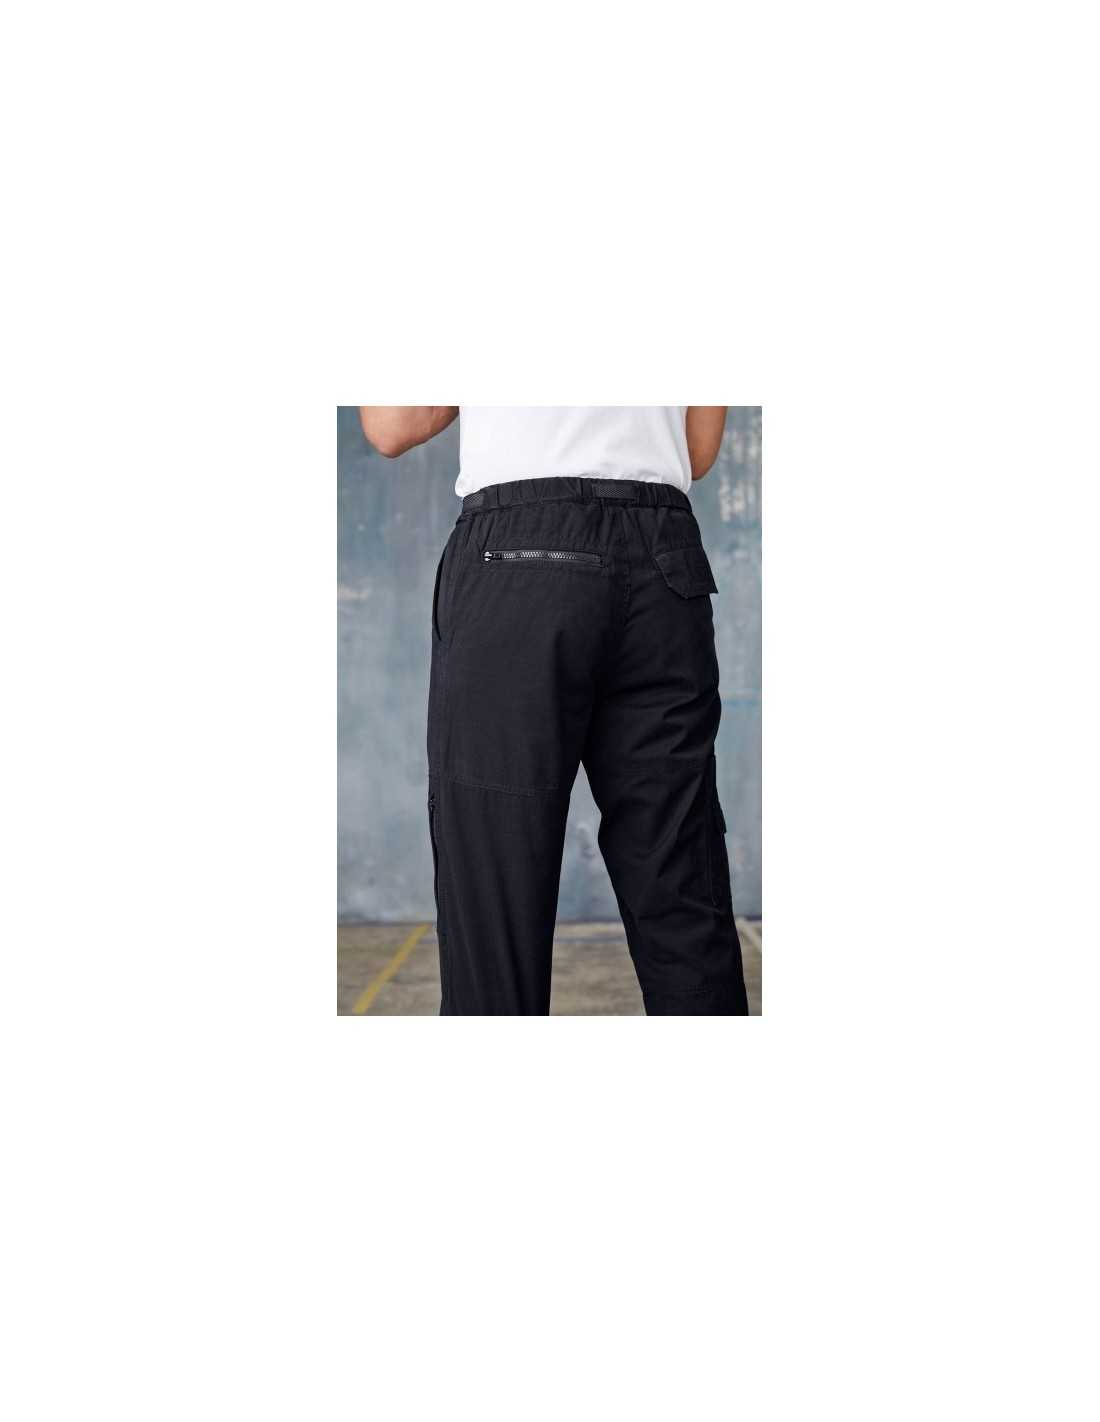 Safari Sport Pantalon Couleur Mimétique pour Homme Taille 56, 8 Poches